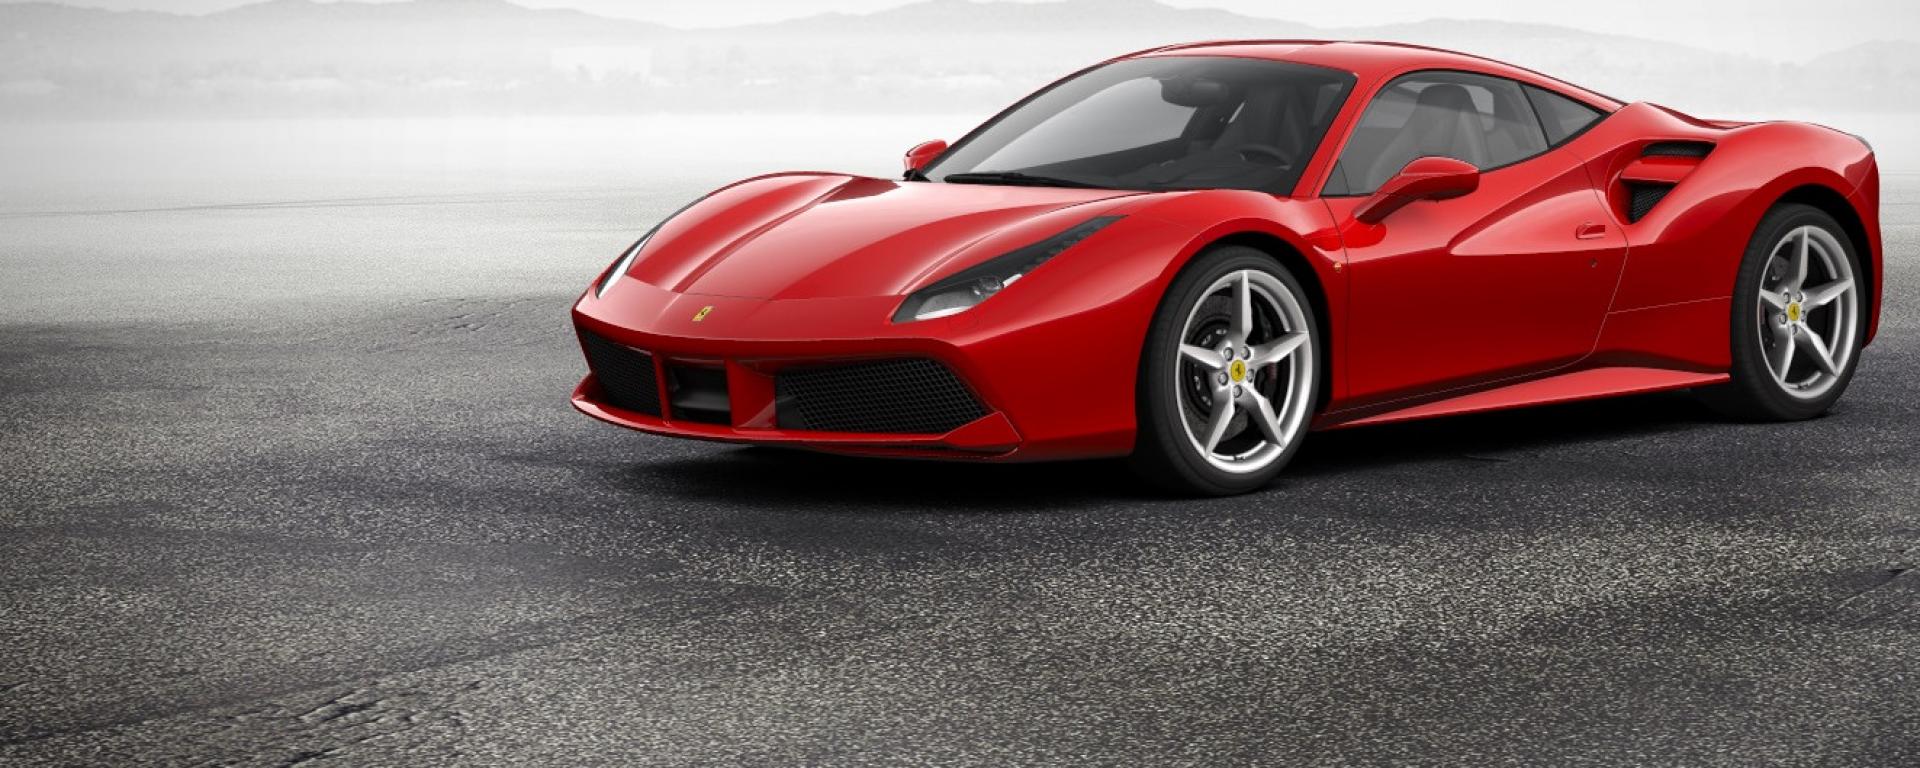 Ferrari rasskazala pro premeru novogo superkara